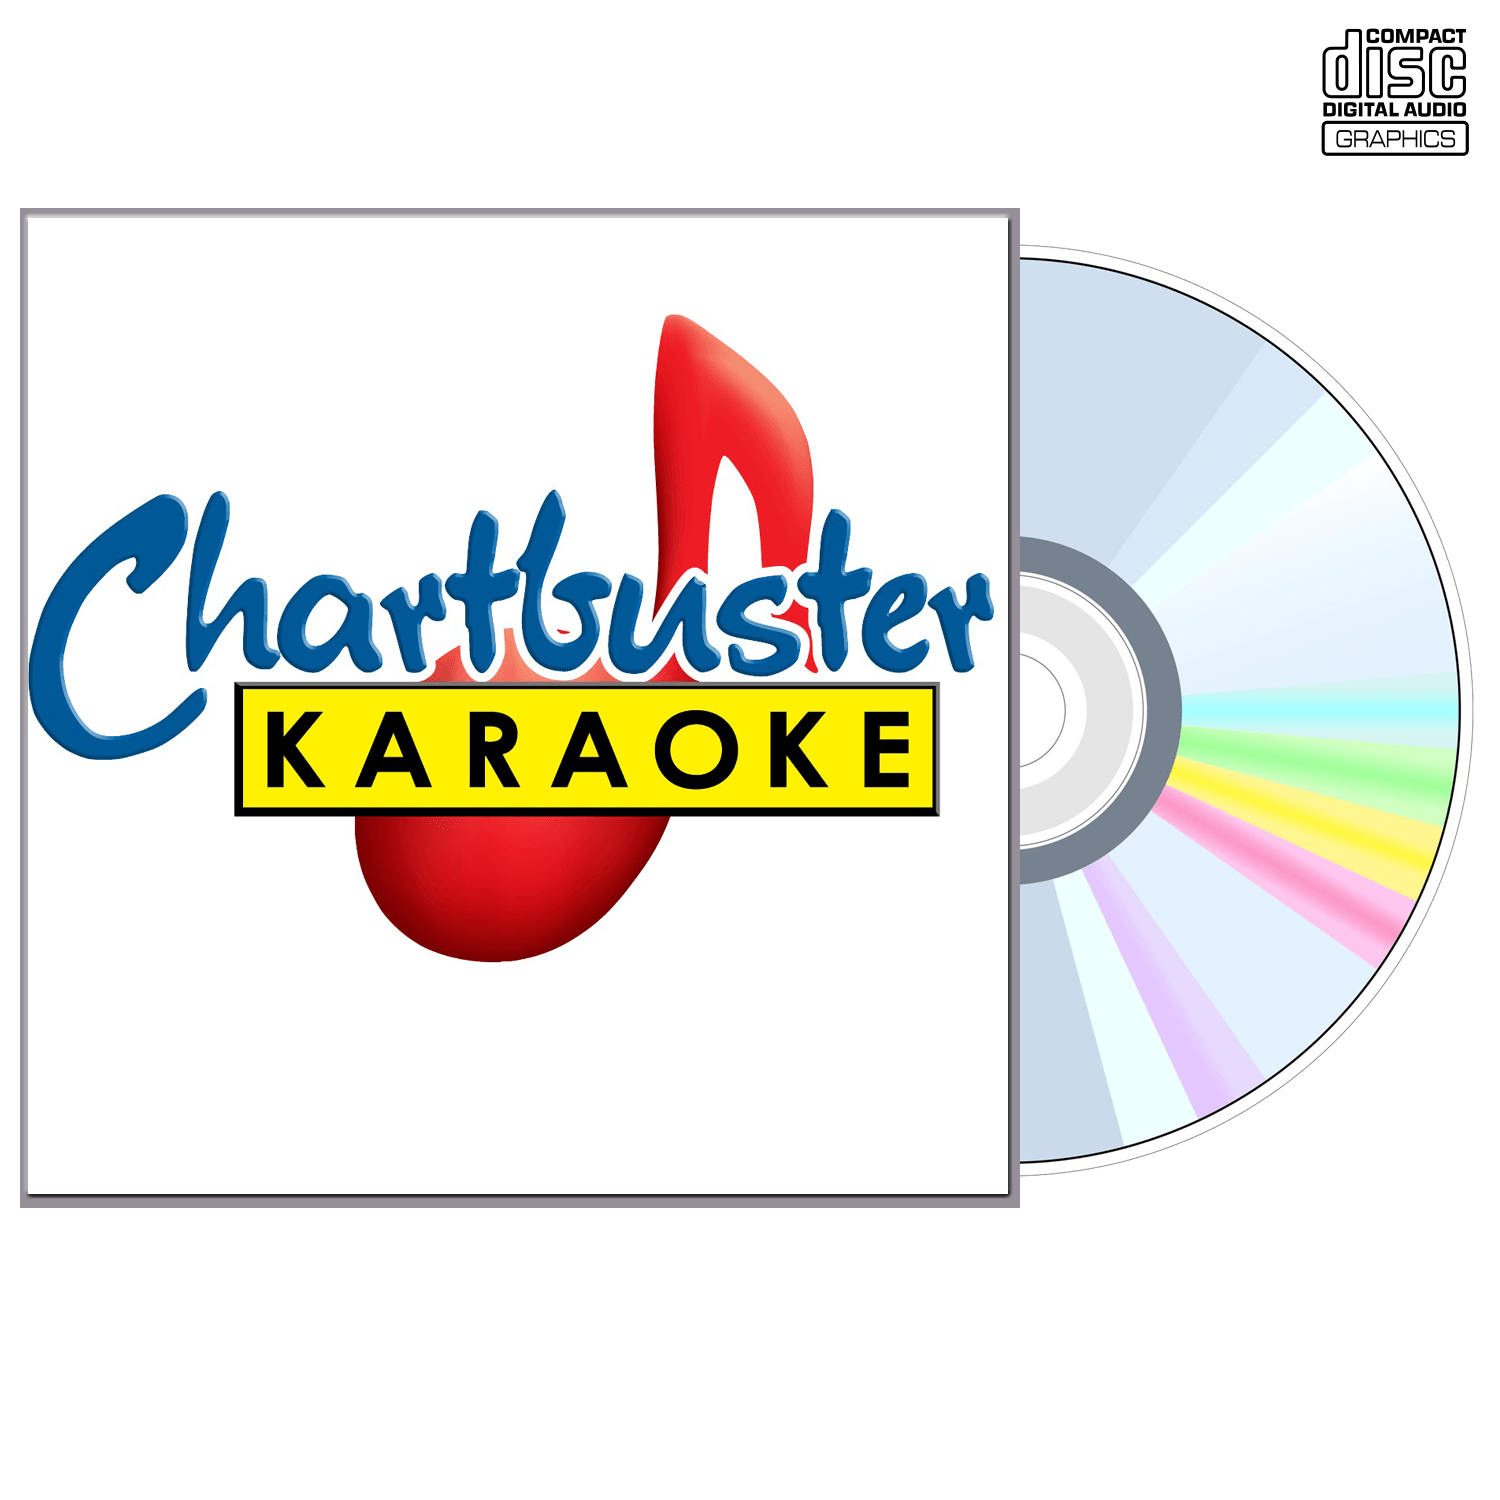 Alabama Vol 2 - CD+G - Chartbuster Karaoke - Karaoke Home Entertainment